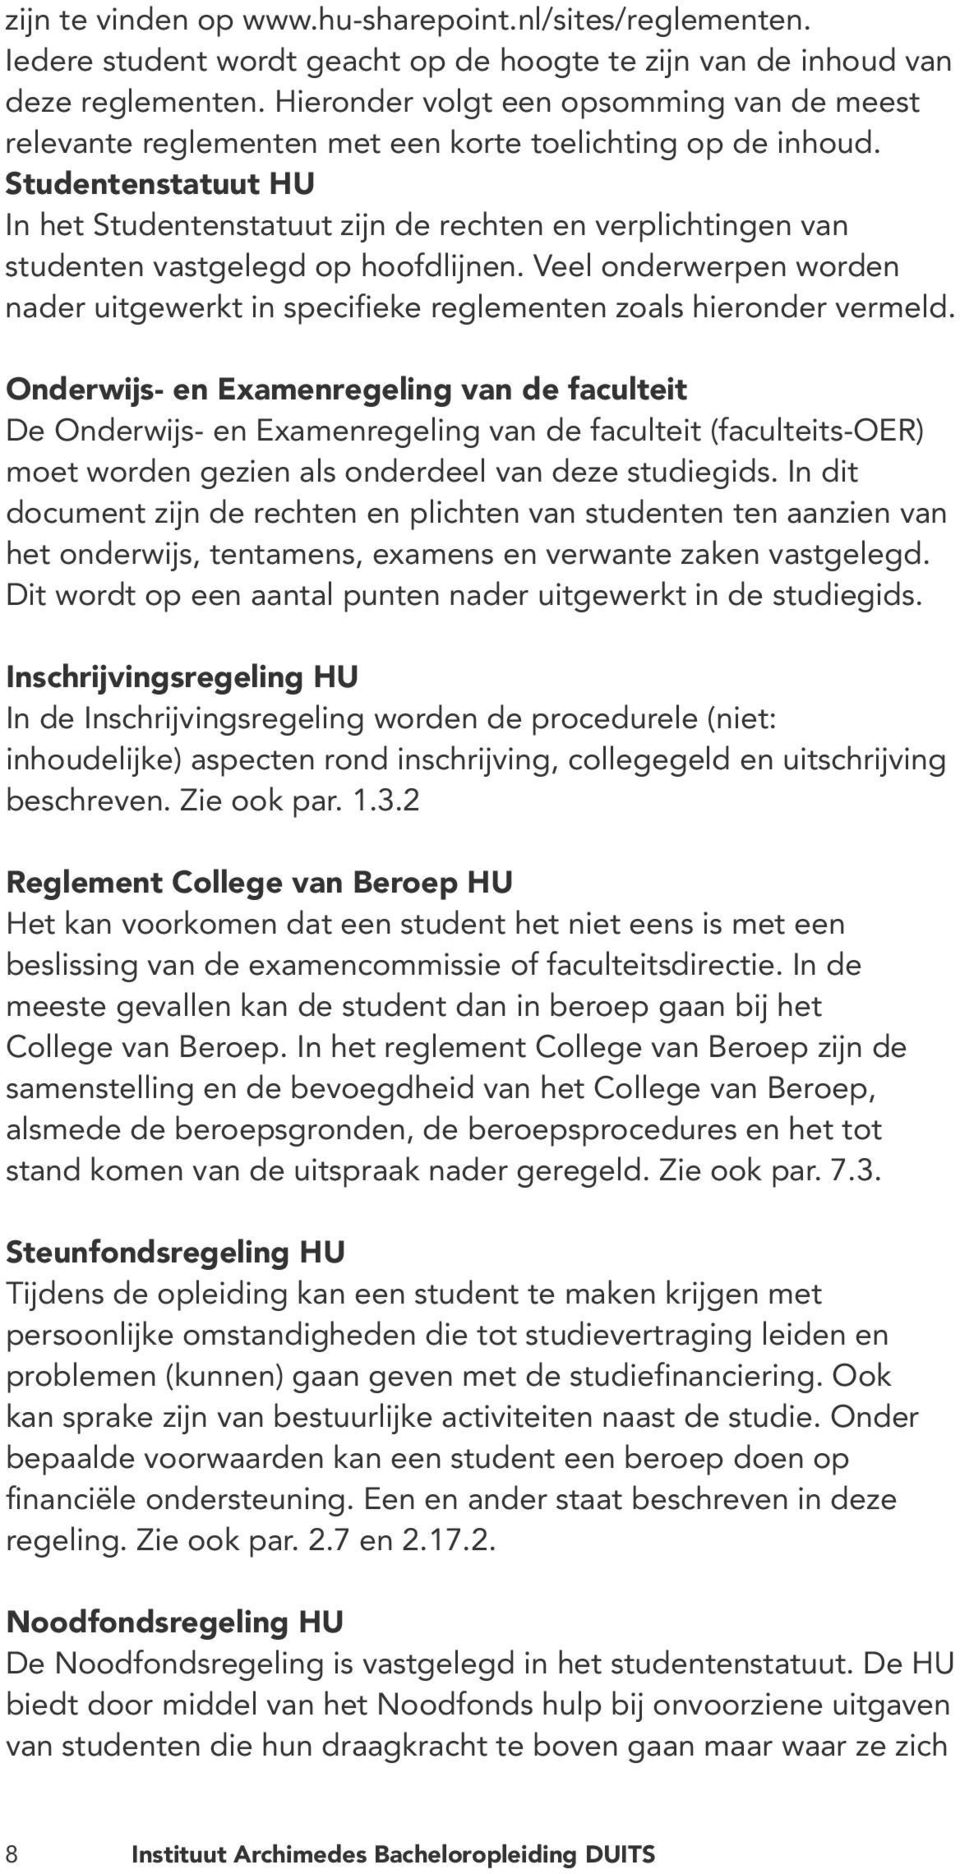 Studentenstatuut HU In het Studentenstatuut zijn de rechten en verplichtingen van studenten vastgelegd op hoofdlijnen.